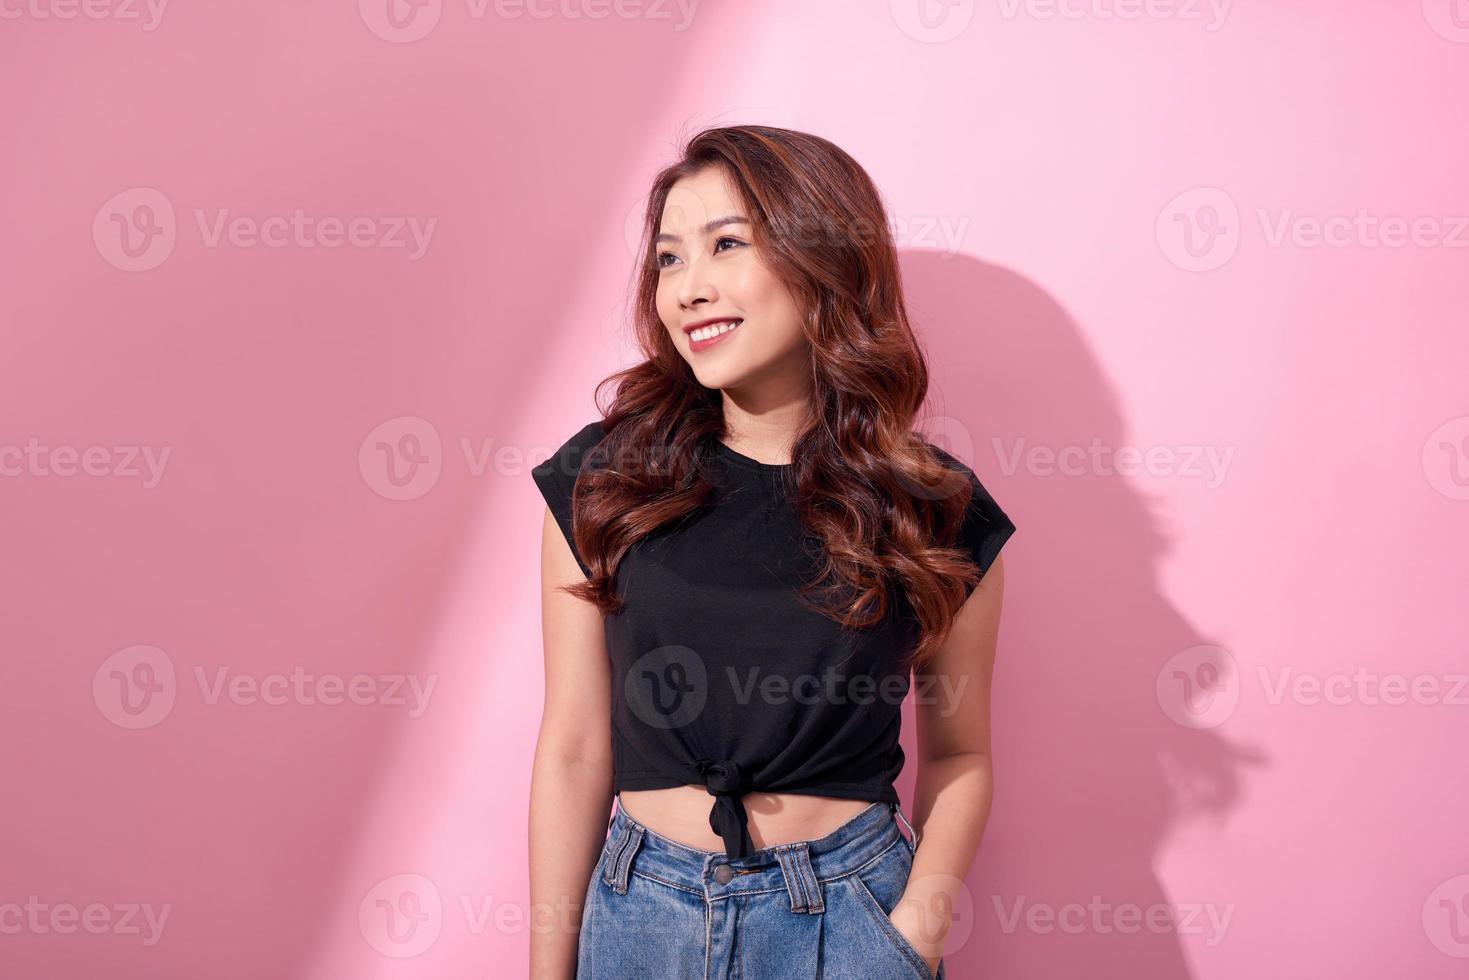 hermoso retrato asiático alegre joven posa con ropa informal con una sonrisa radiante de pie aislado en un fondo rosa foto